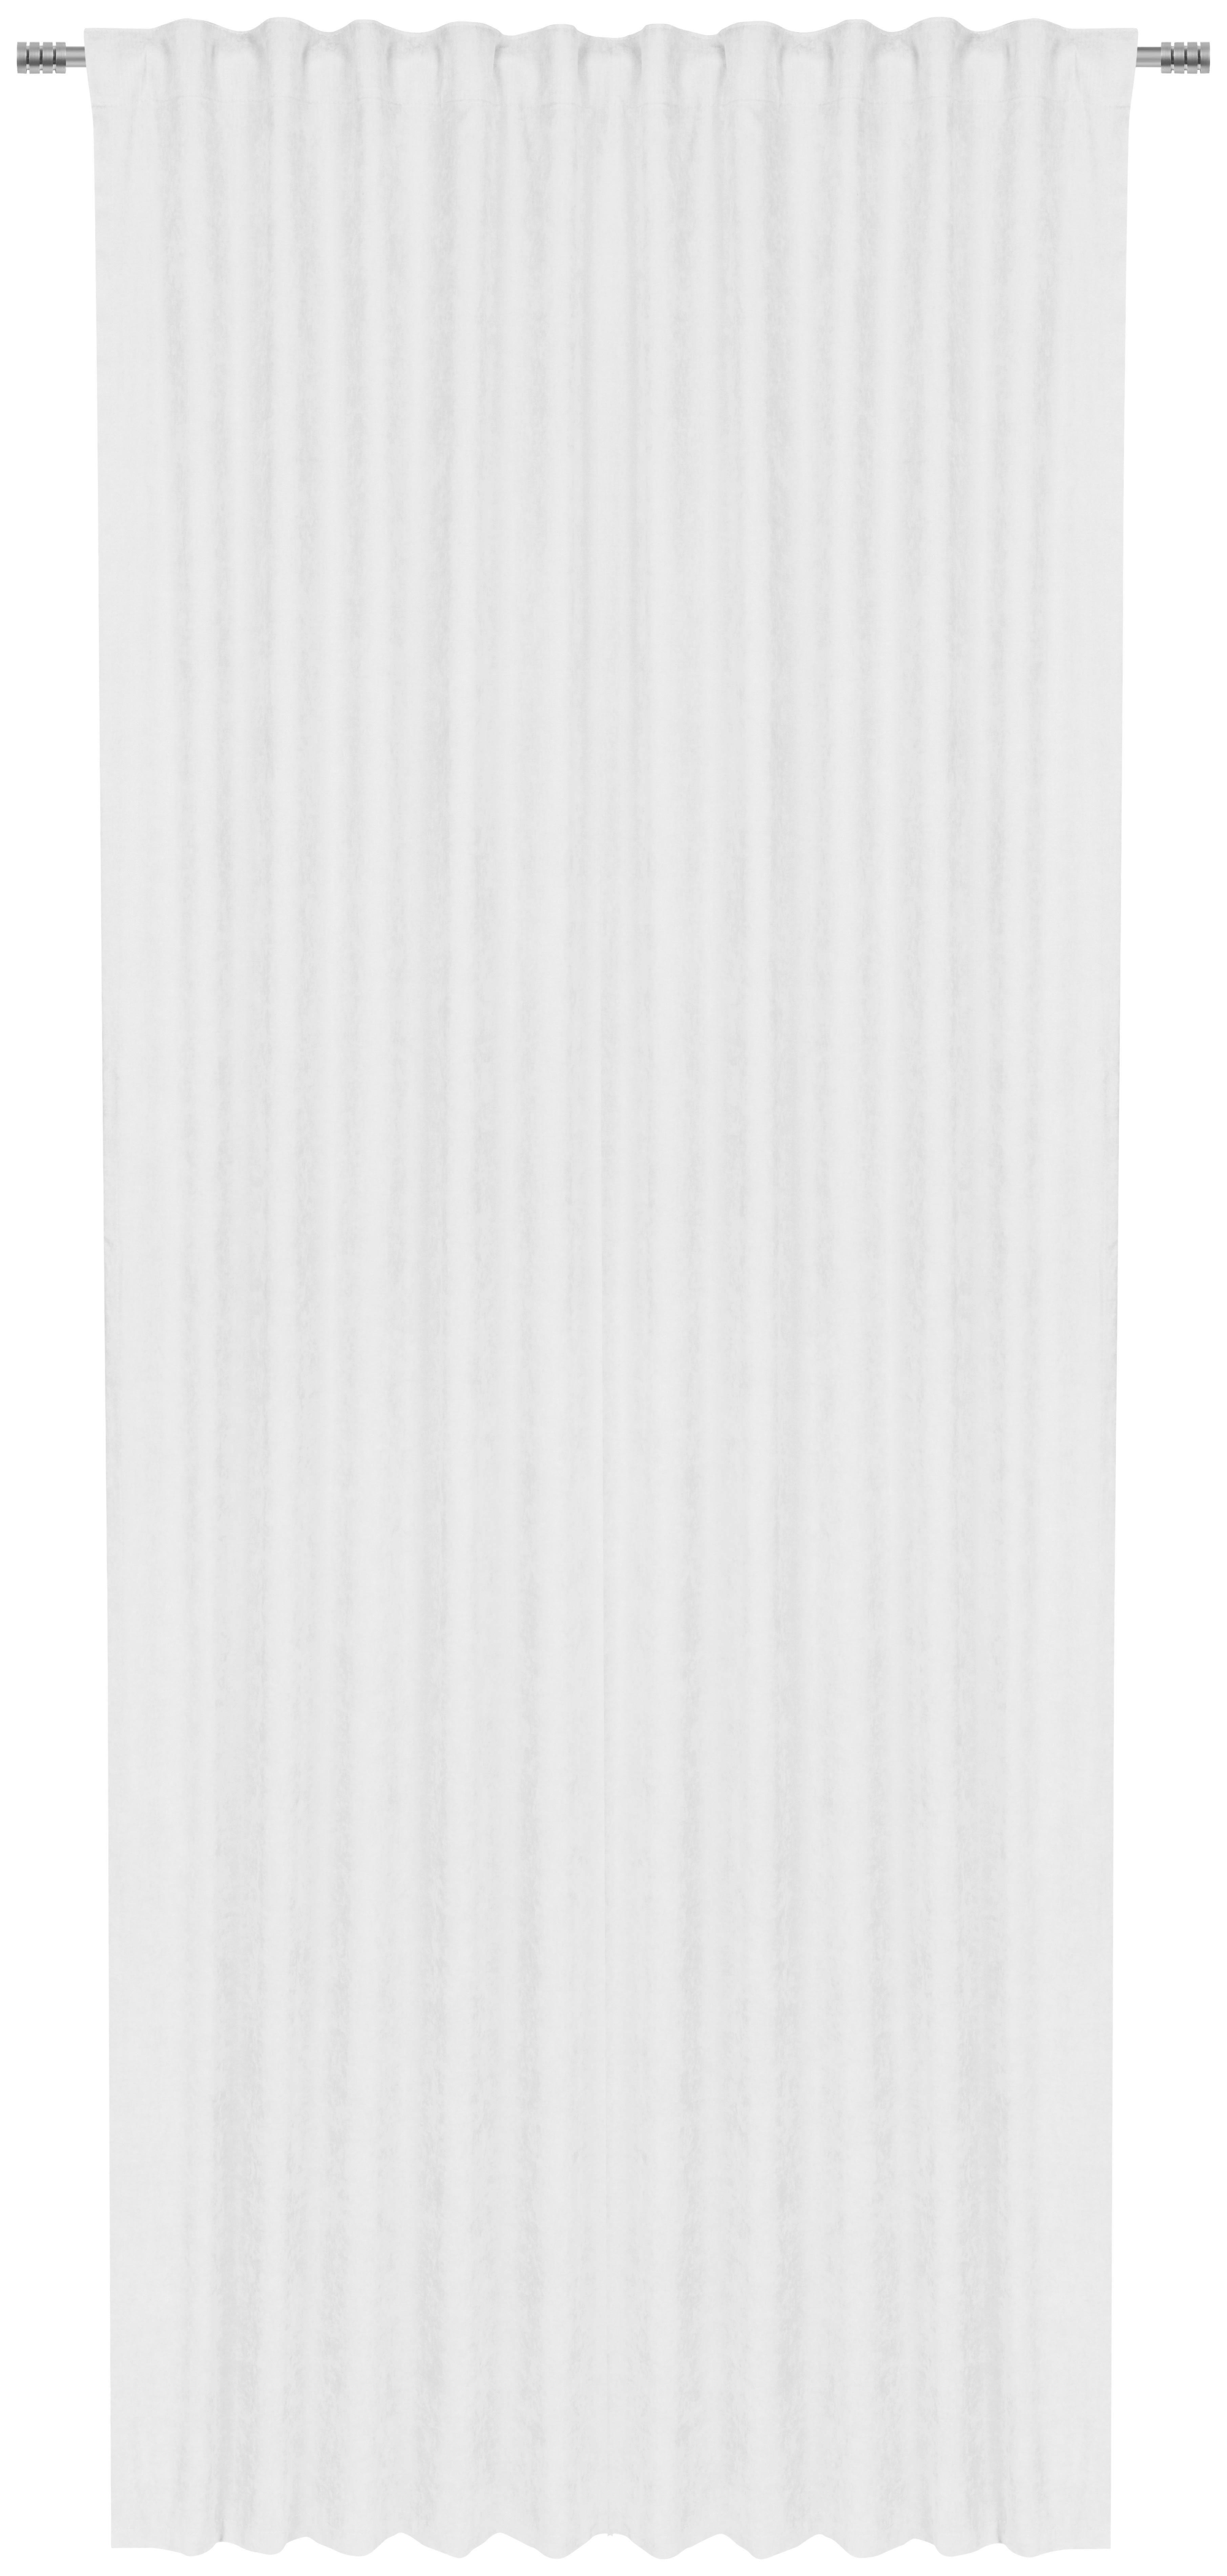 FERTIGVORHANG Harmony blickdicht 140/245 cm   - Weiß, Basics, Textil (140/245cm) - Esposa